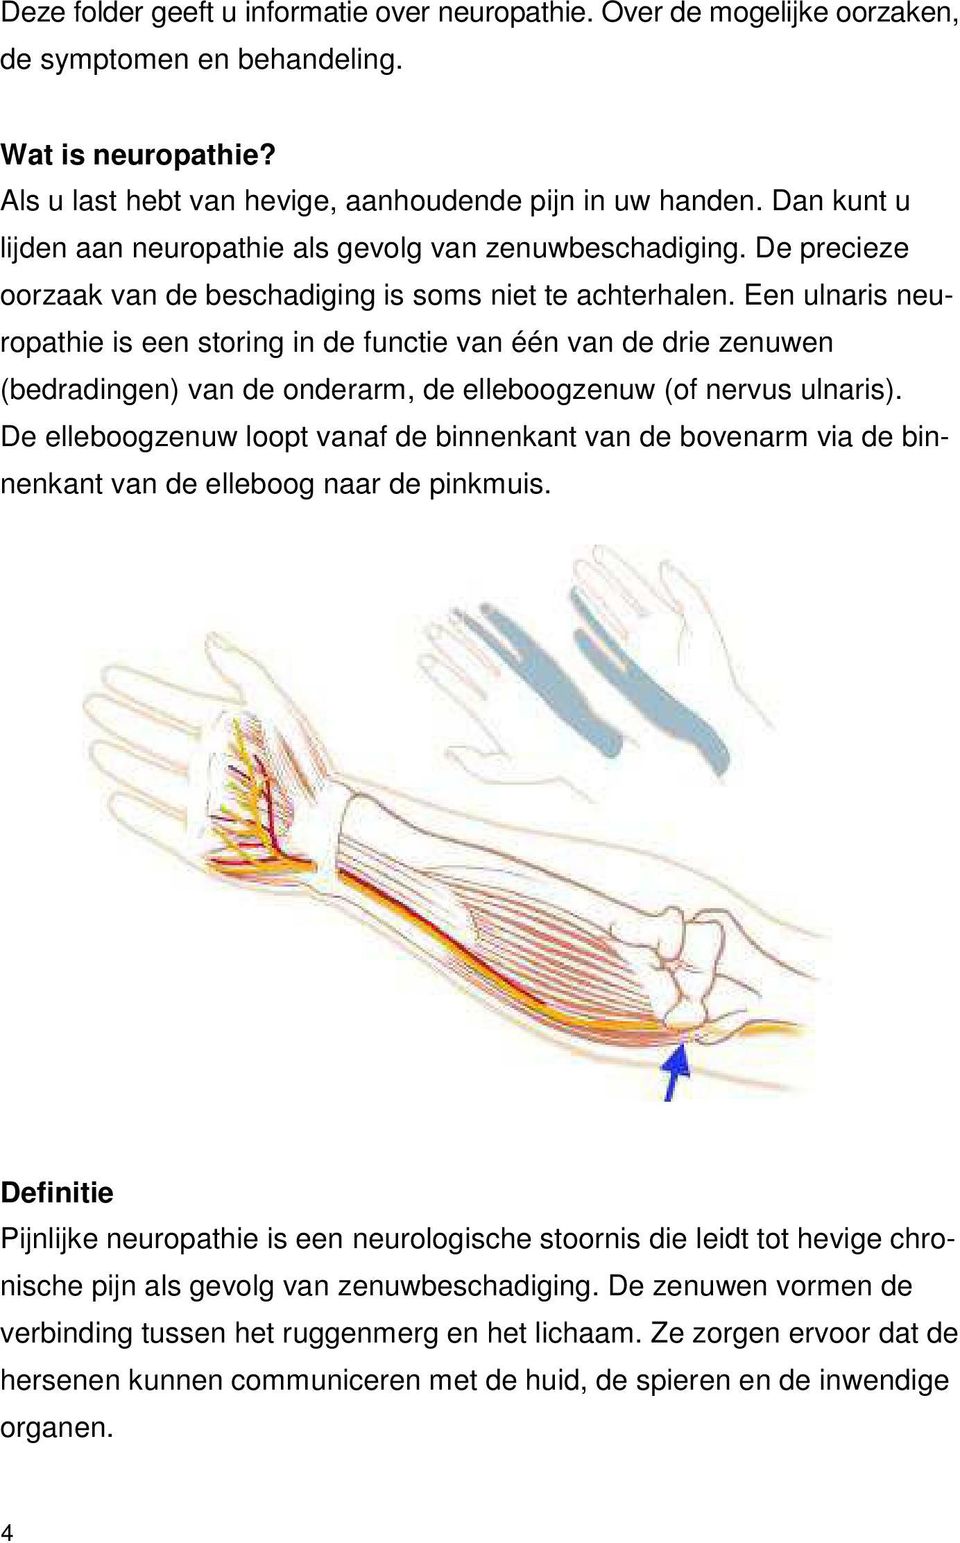 Een ulnaris neuropathie is een storing in de functie van één van de drie zenuwen (bedradingen) van de onderarm, de elleboogzenuw (of nervus ulnaris).